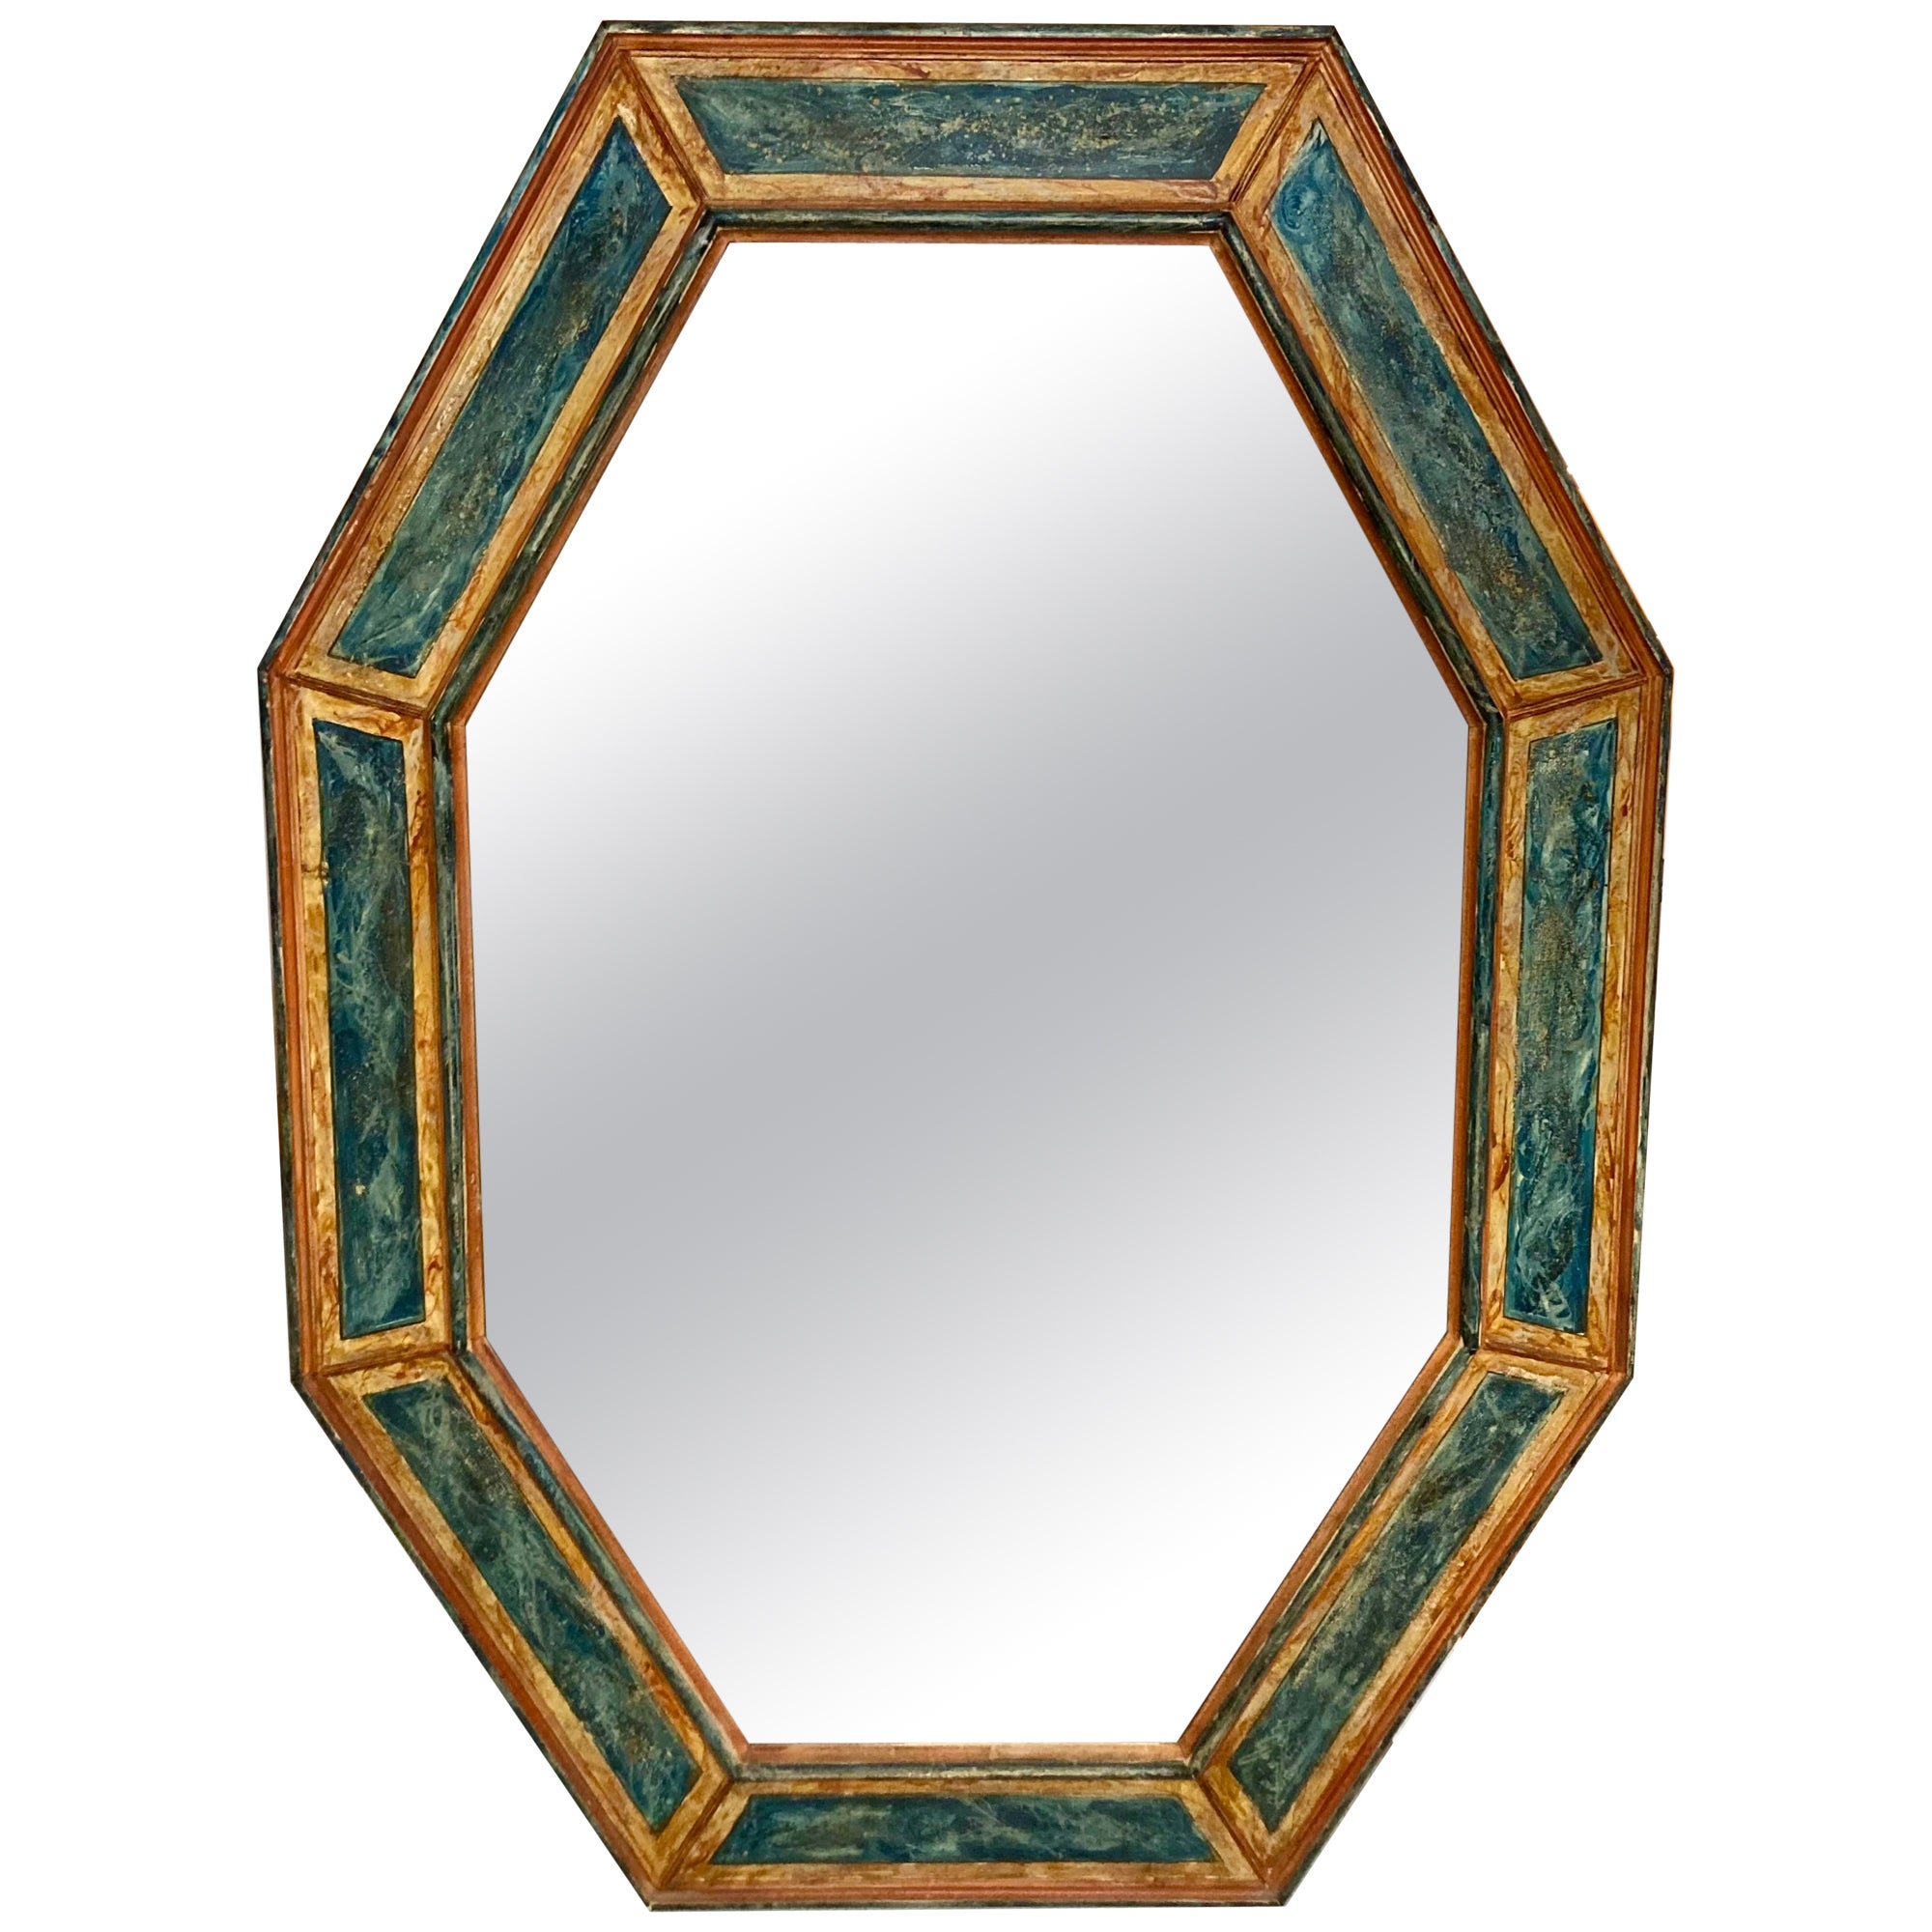 Grand miroir italien du 19ème siècle peint en faux marbre